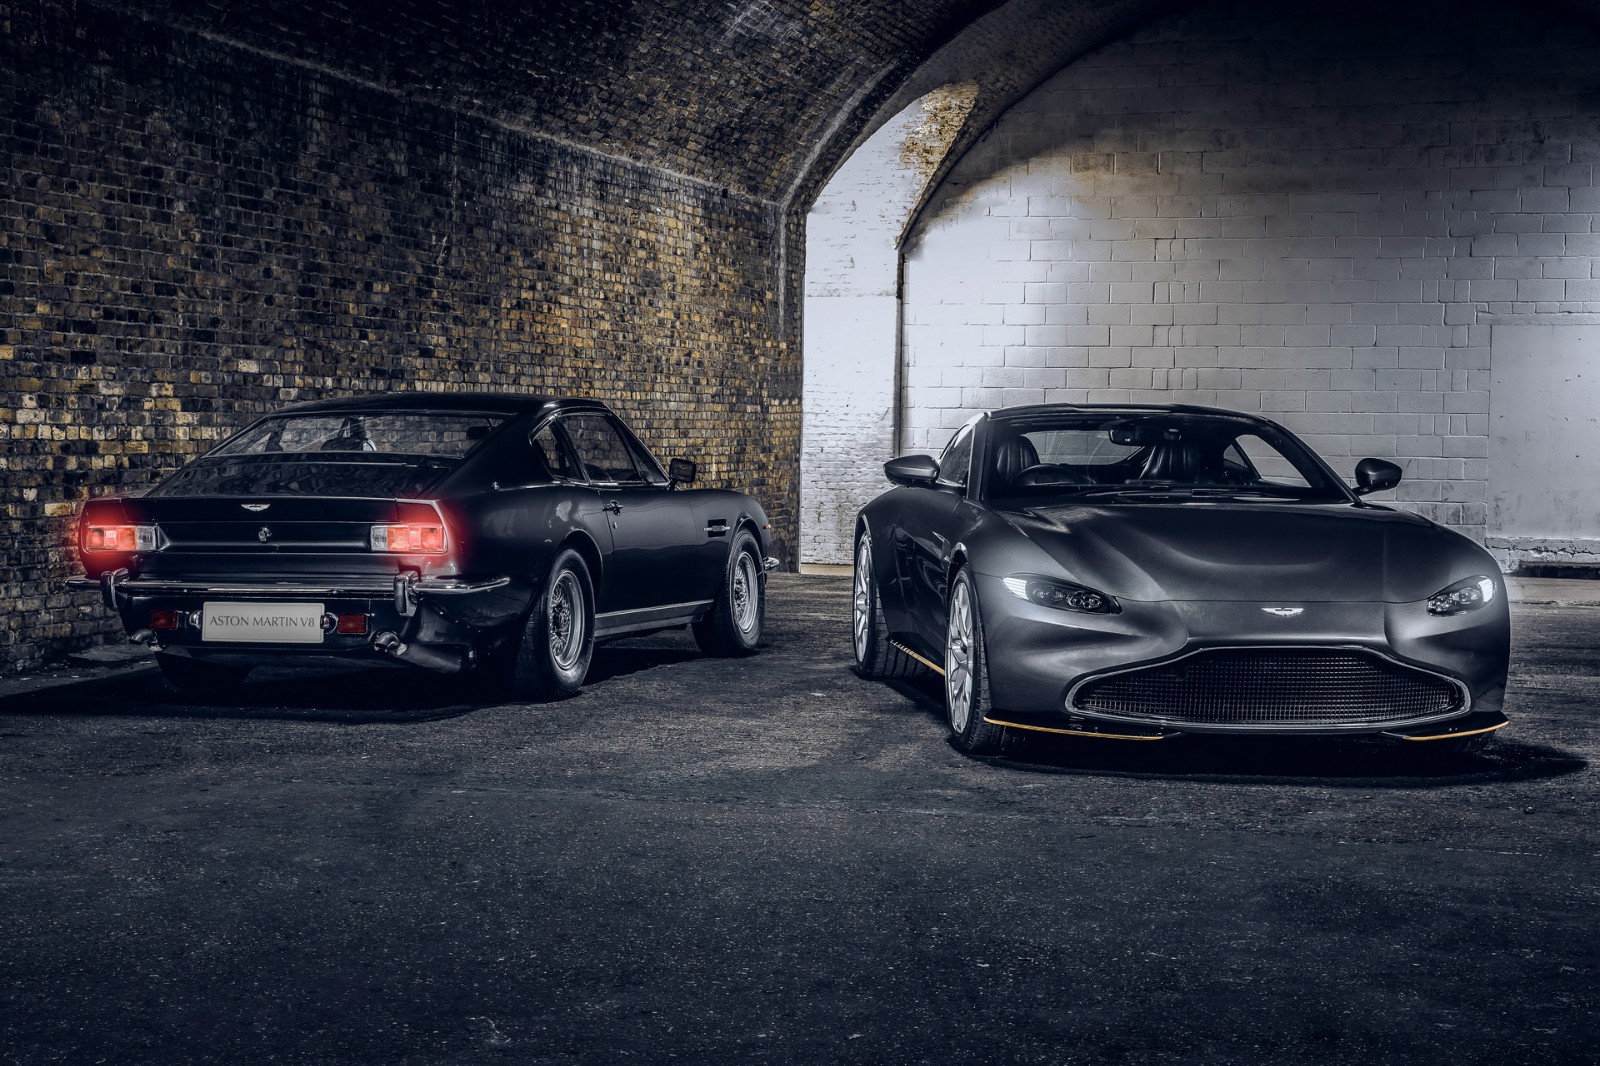 【梗係要借題發揮吓啦】Aston Martin趁有新占士邦電影上映推出兩款限量版